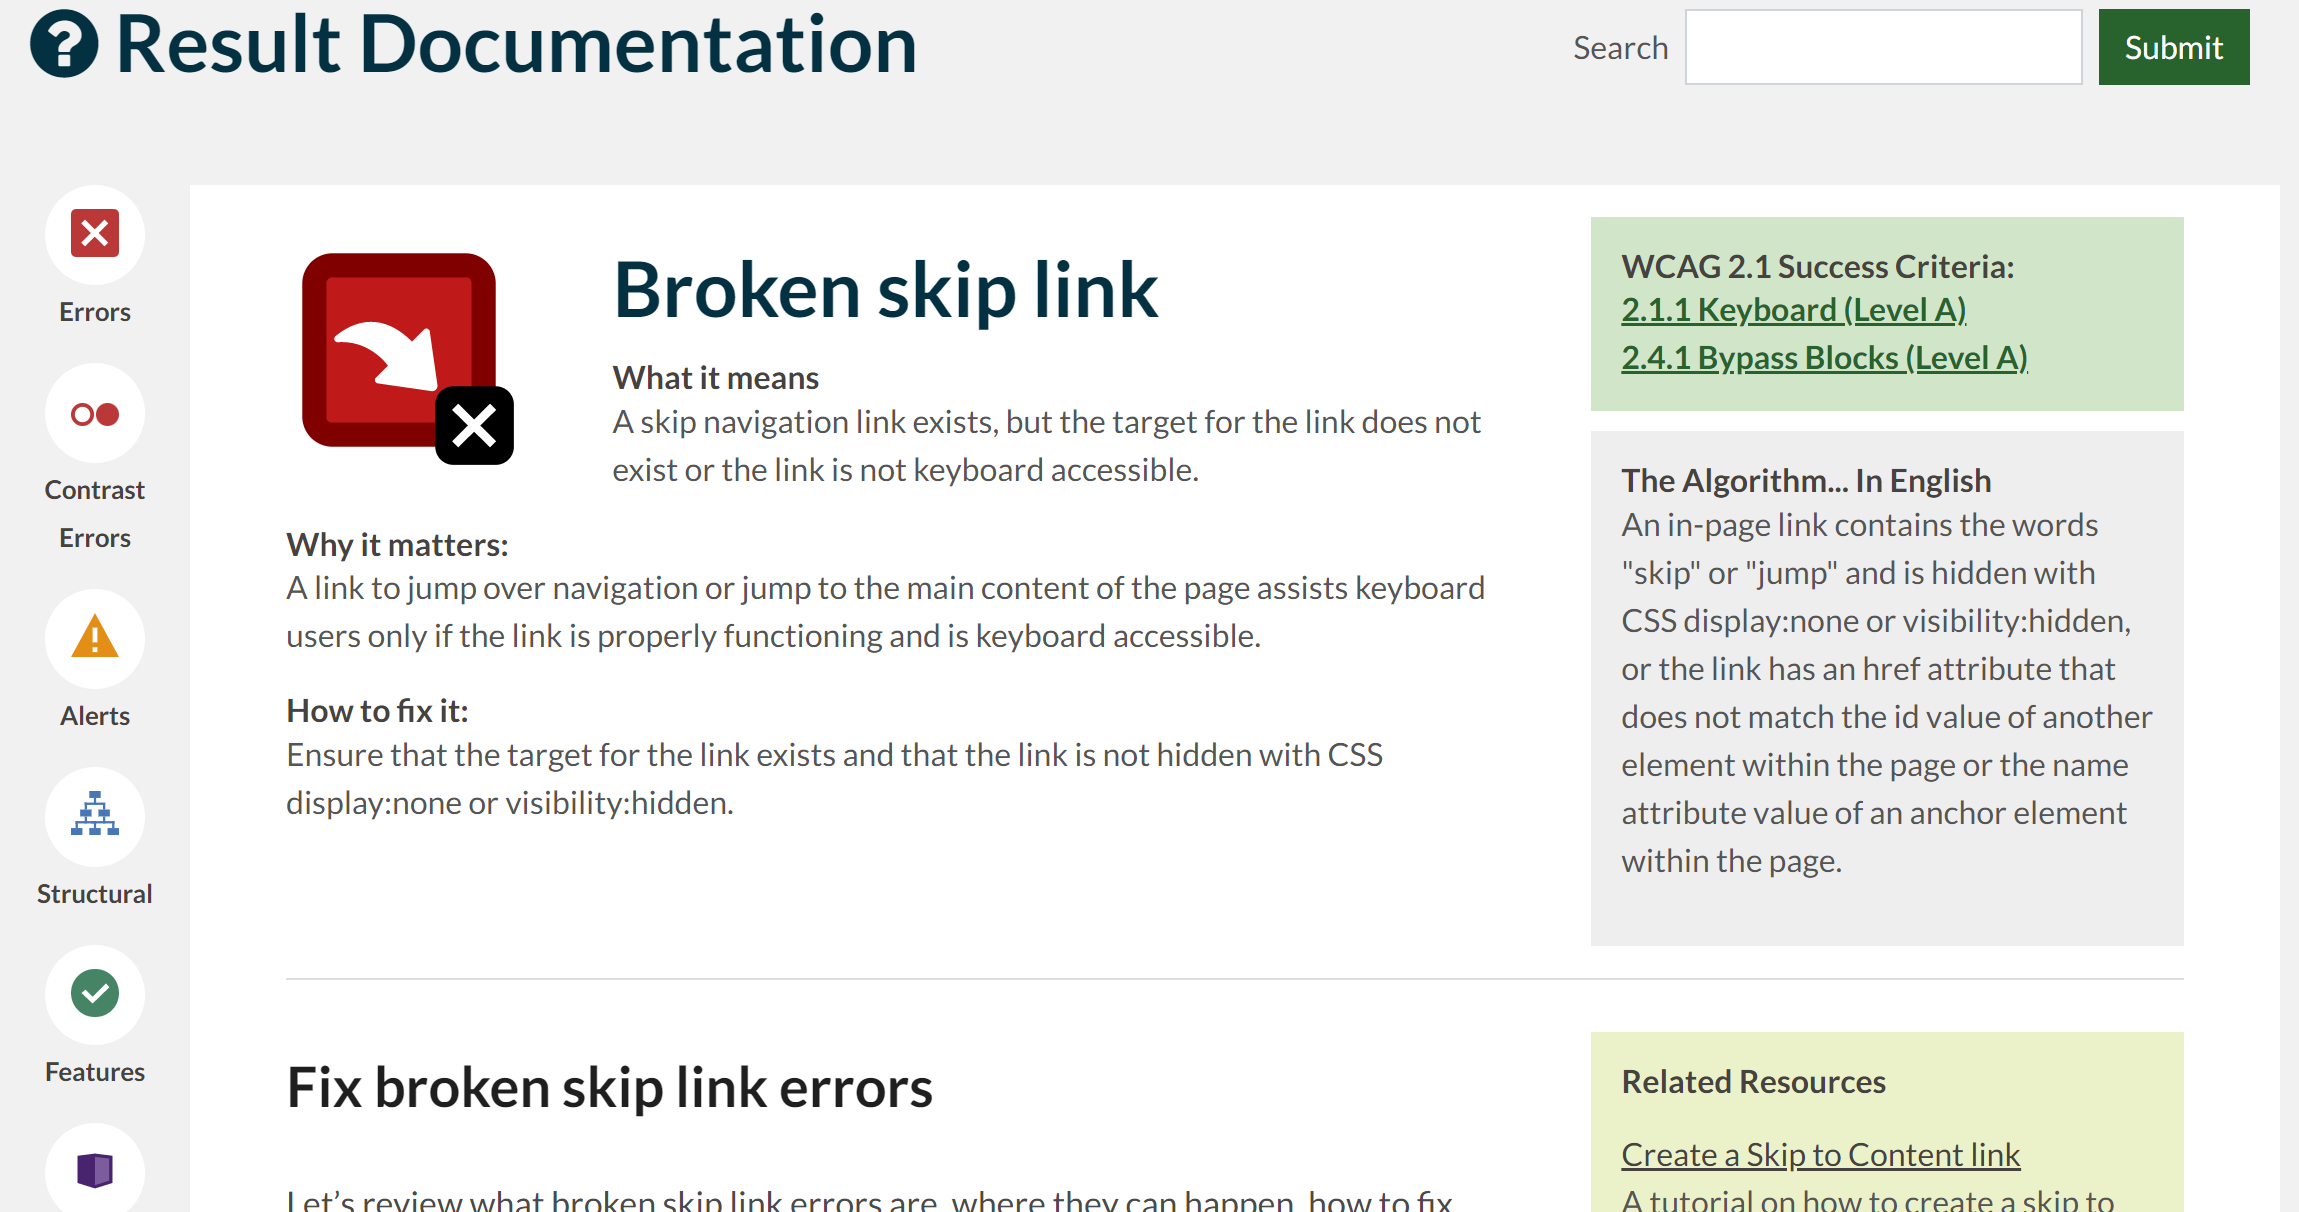 Result Documentation example for broken skip link